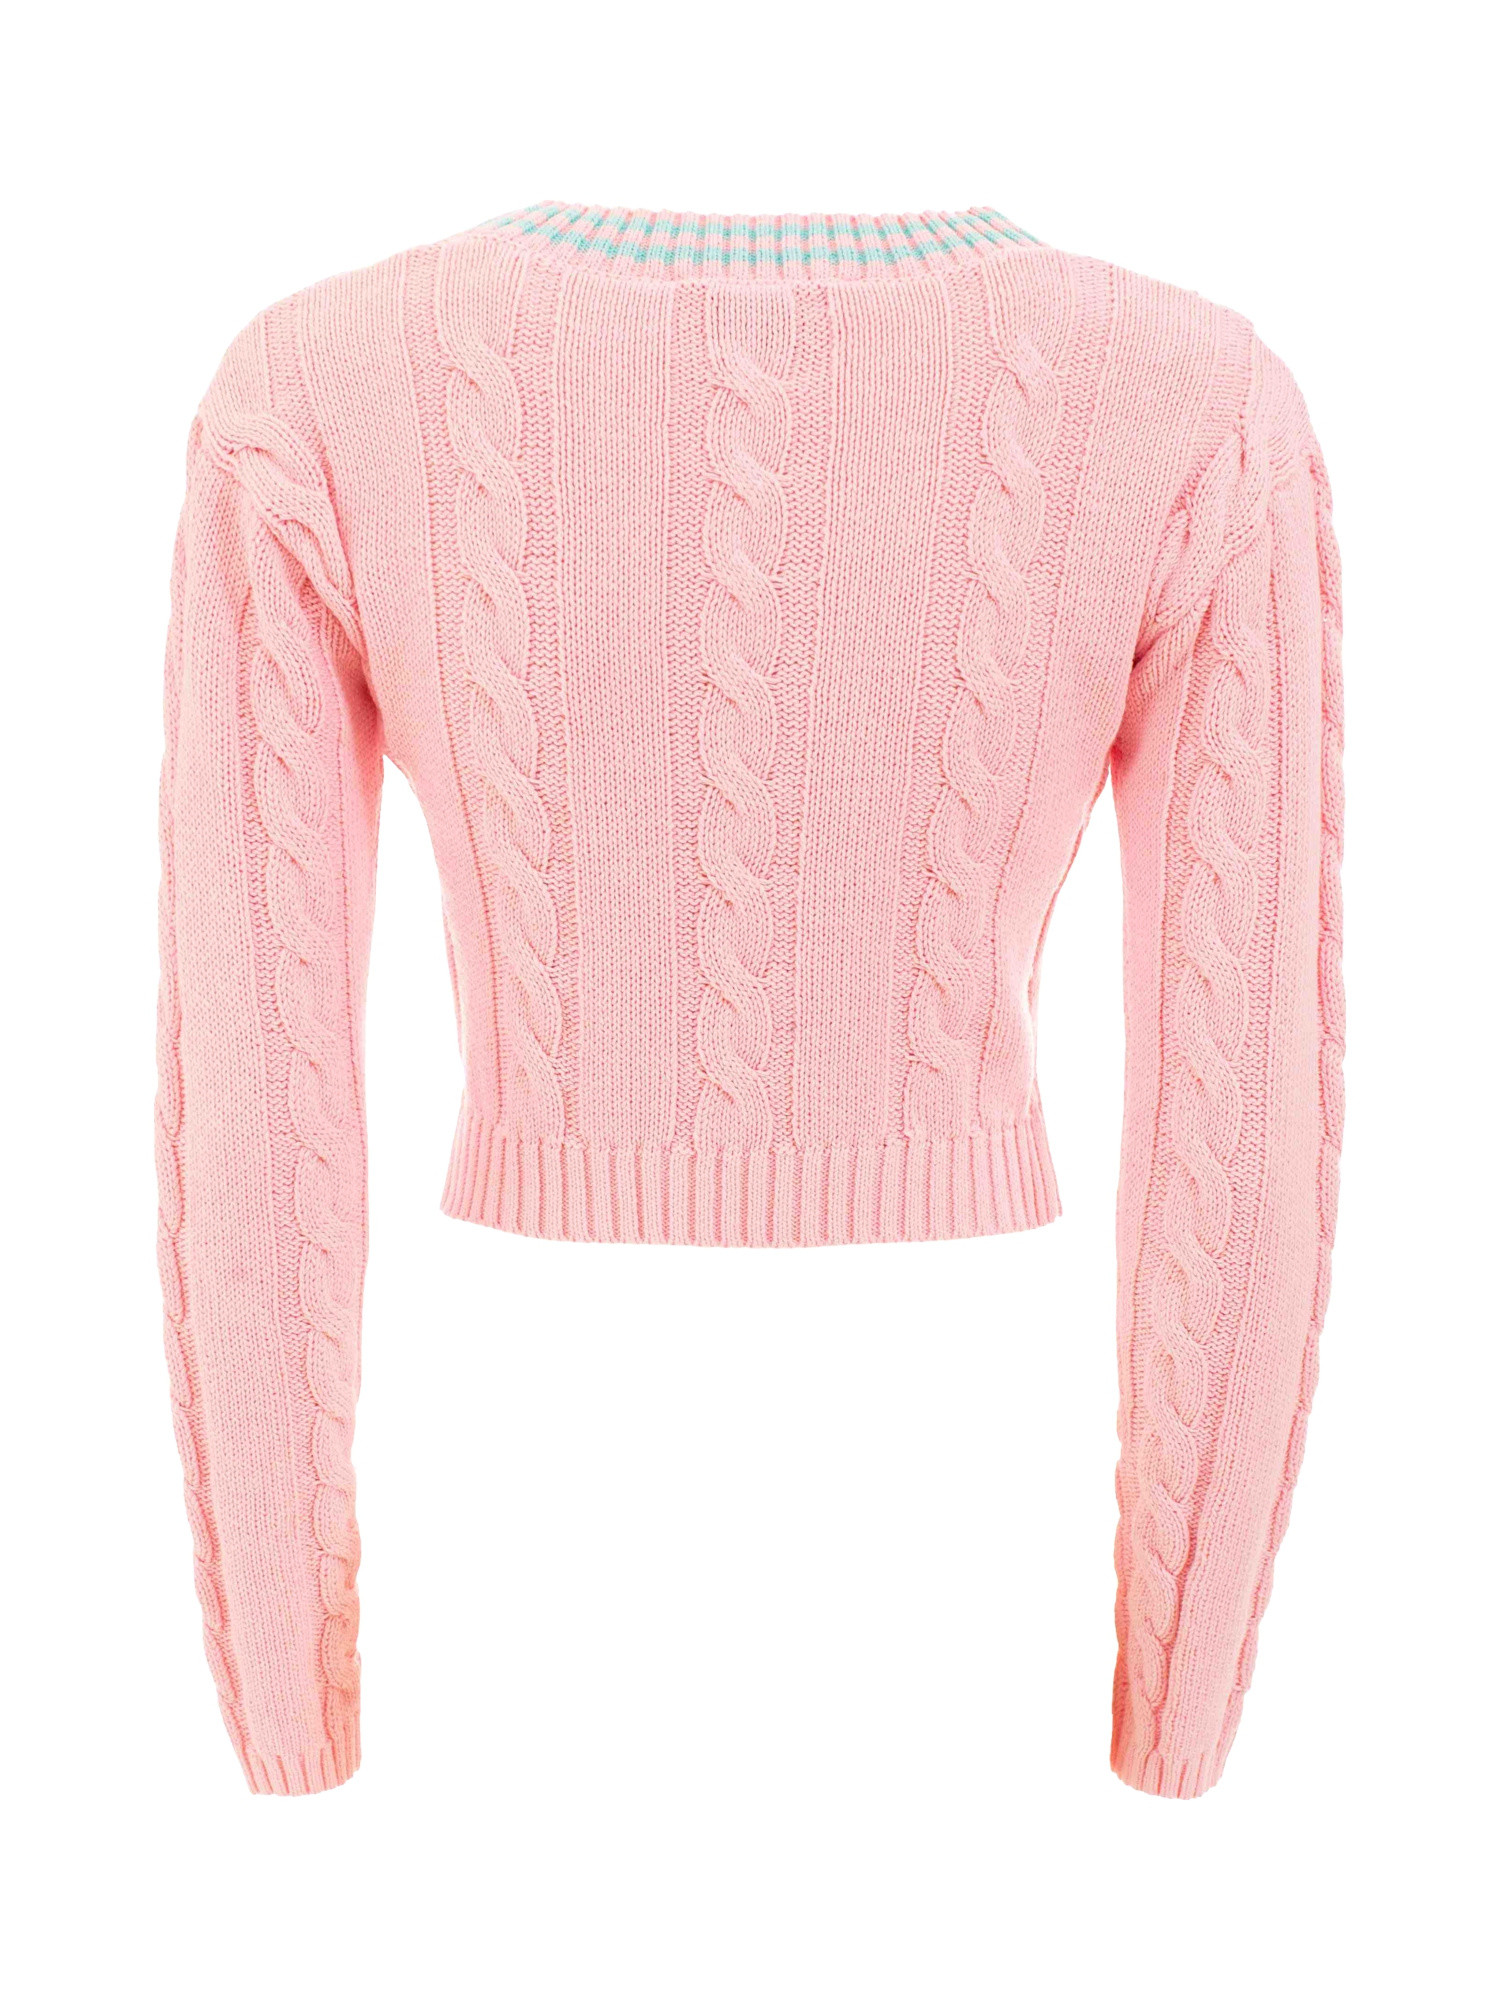 Chiara Ferragni - Cropped V-neck sweater, Pink, large image number 1